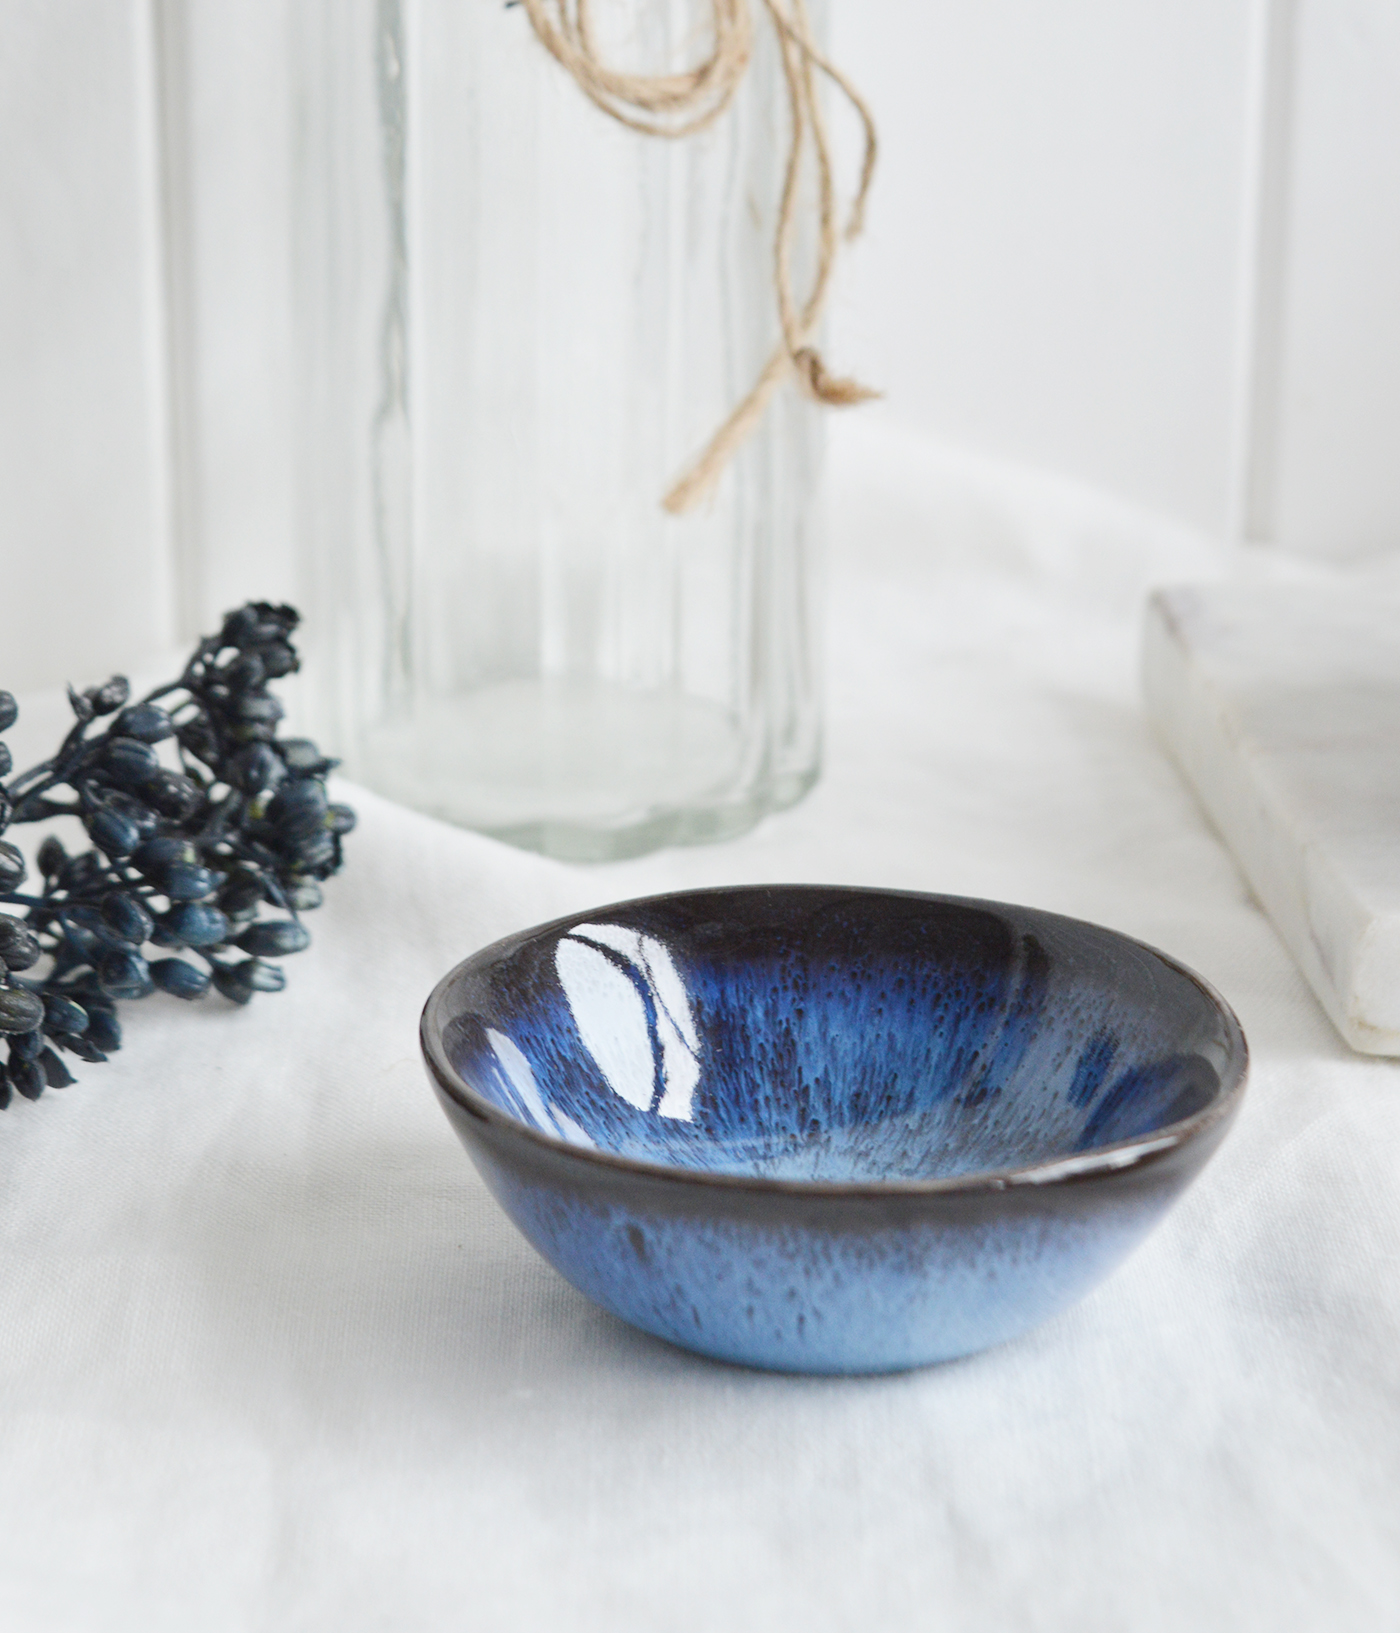 Pilgrim Ceramic Bowls - Small Blue for New England, farmhouse,  Country and coastal homes and interior decor